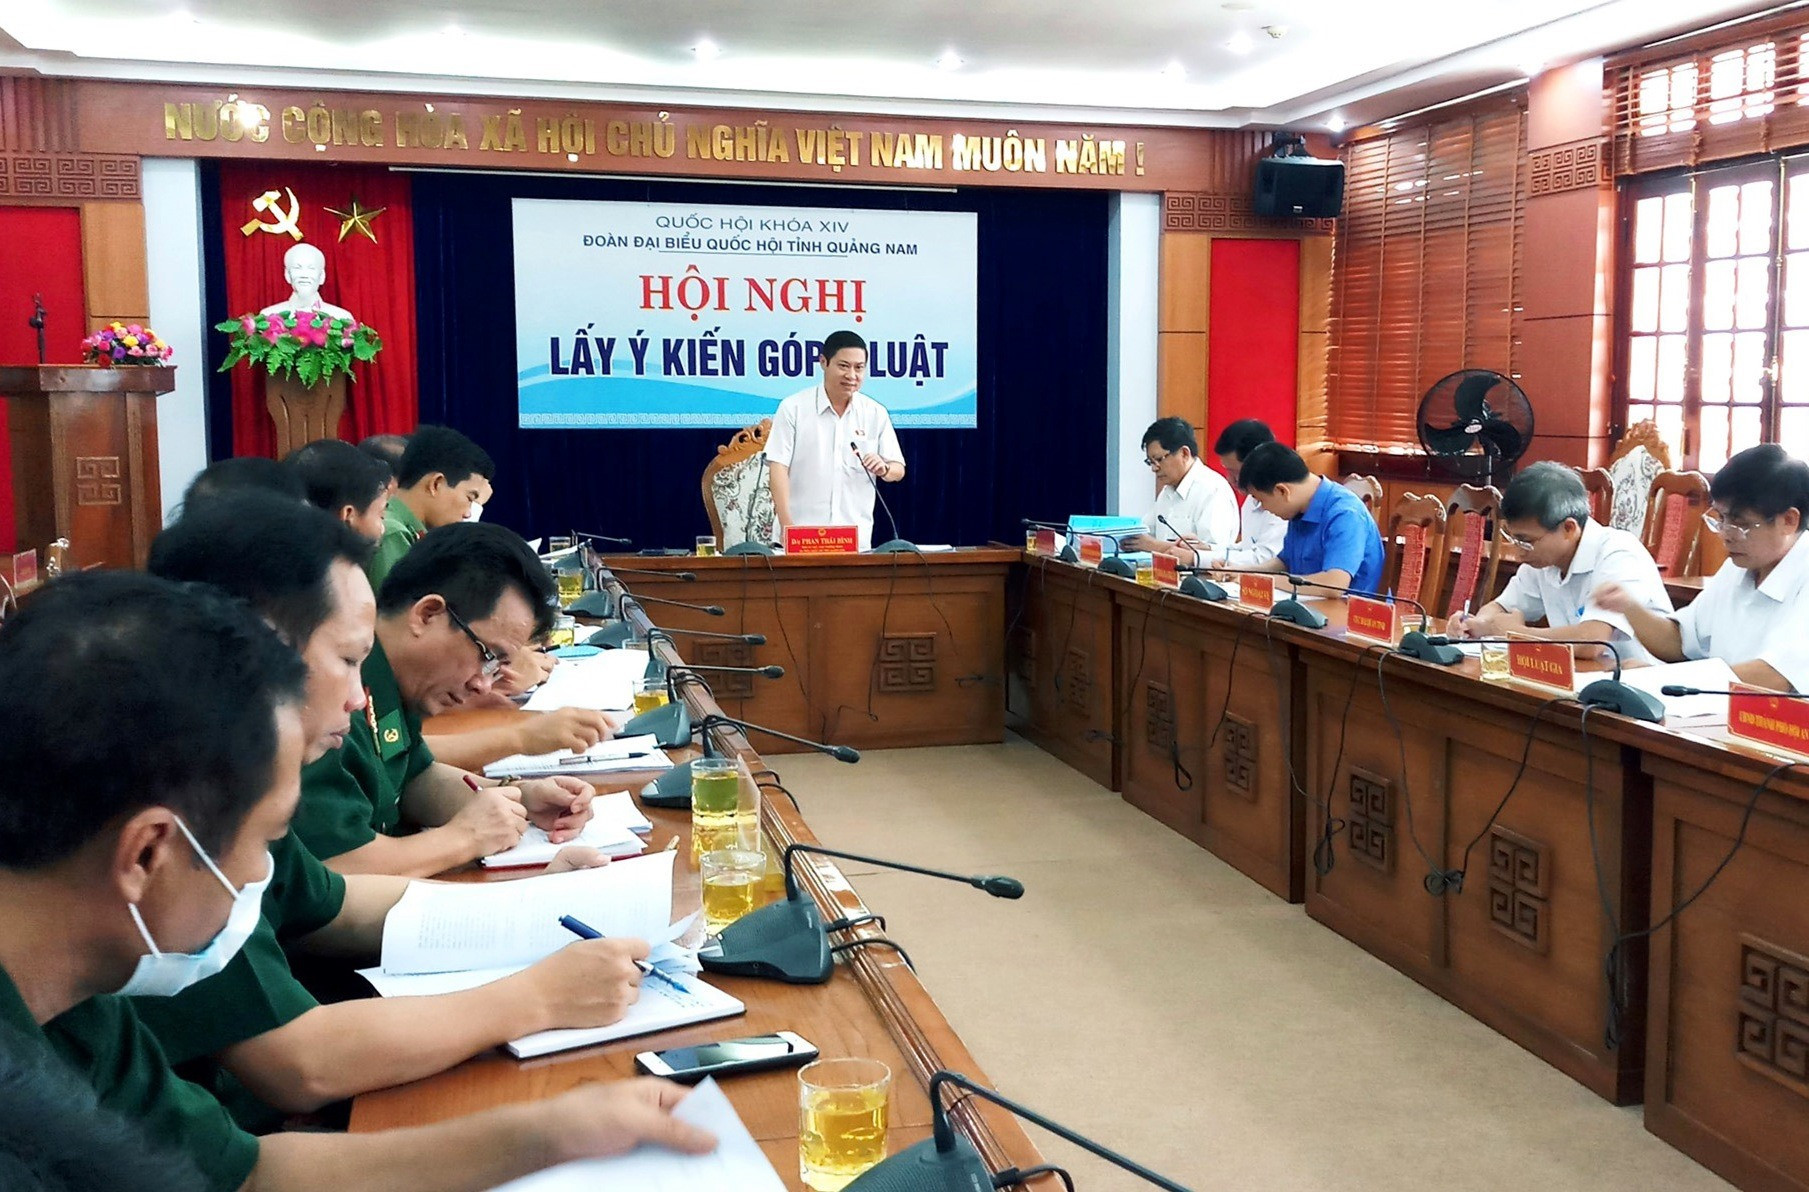 Phó trưởng Đoàn Đại biểu Quốc hội tỉnh Phan Thái Bình chủ trì buổi hội nghị lấy ý kiến. Ảnh: A.N